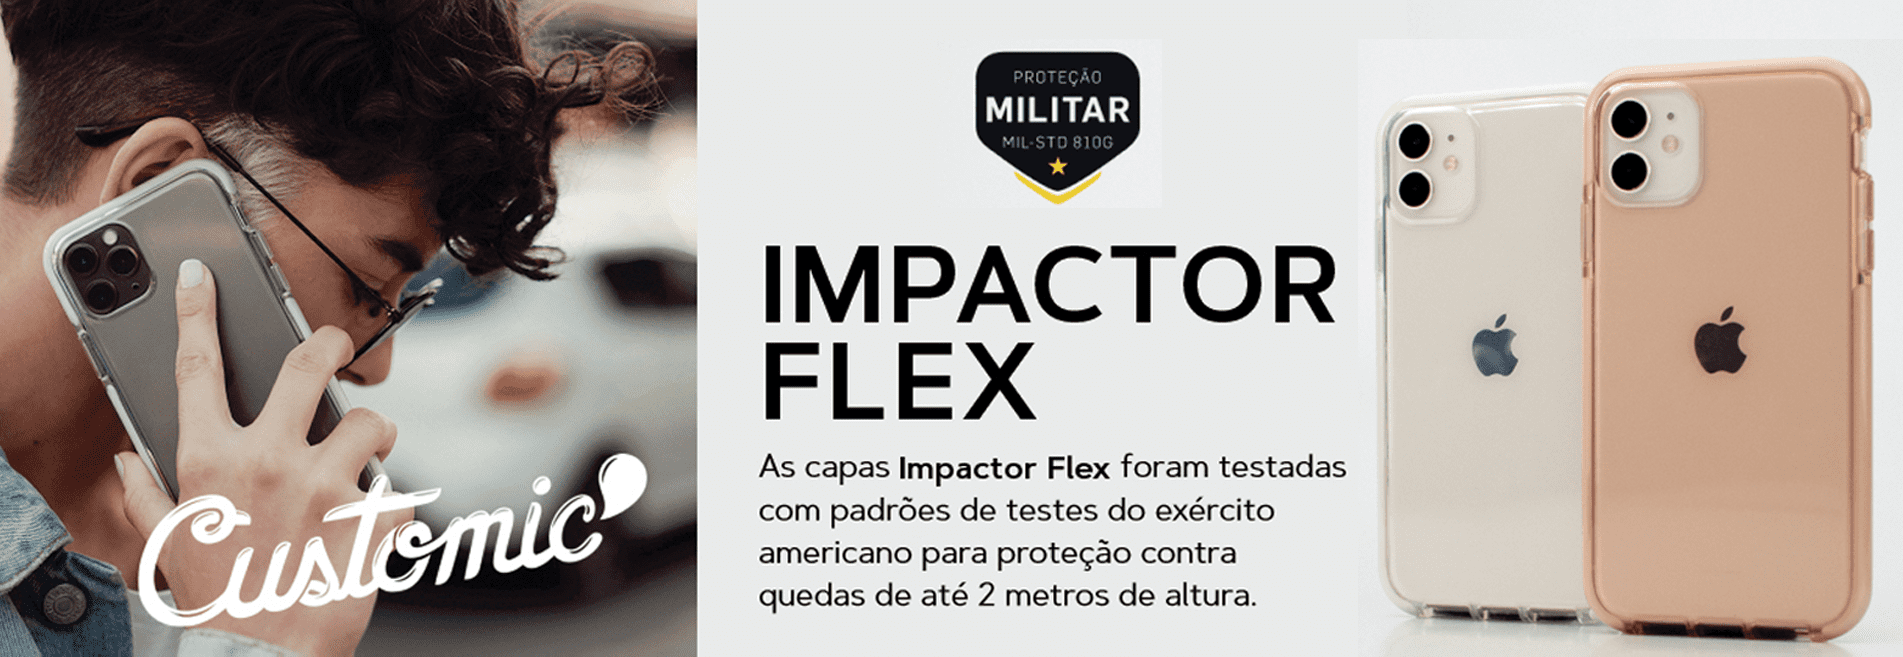 IMPACTOR FLEXx